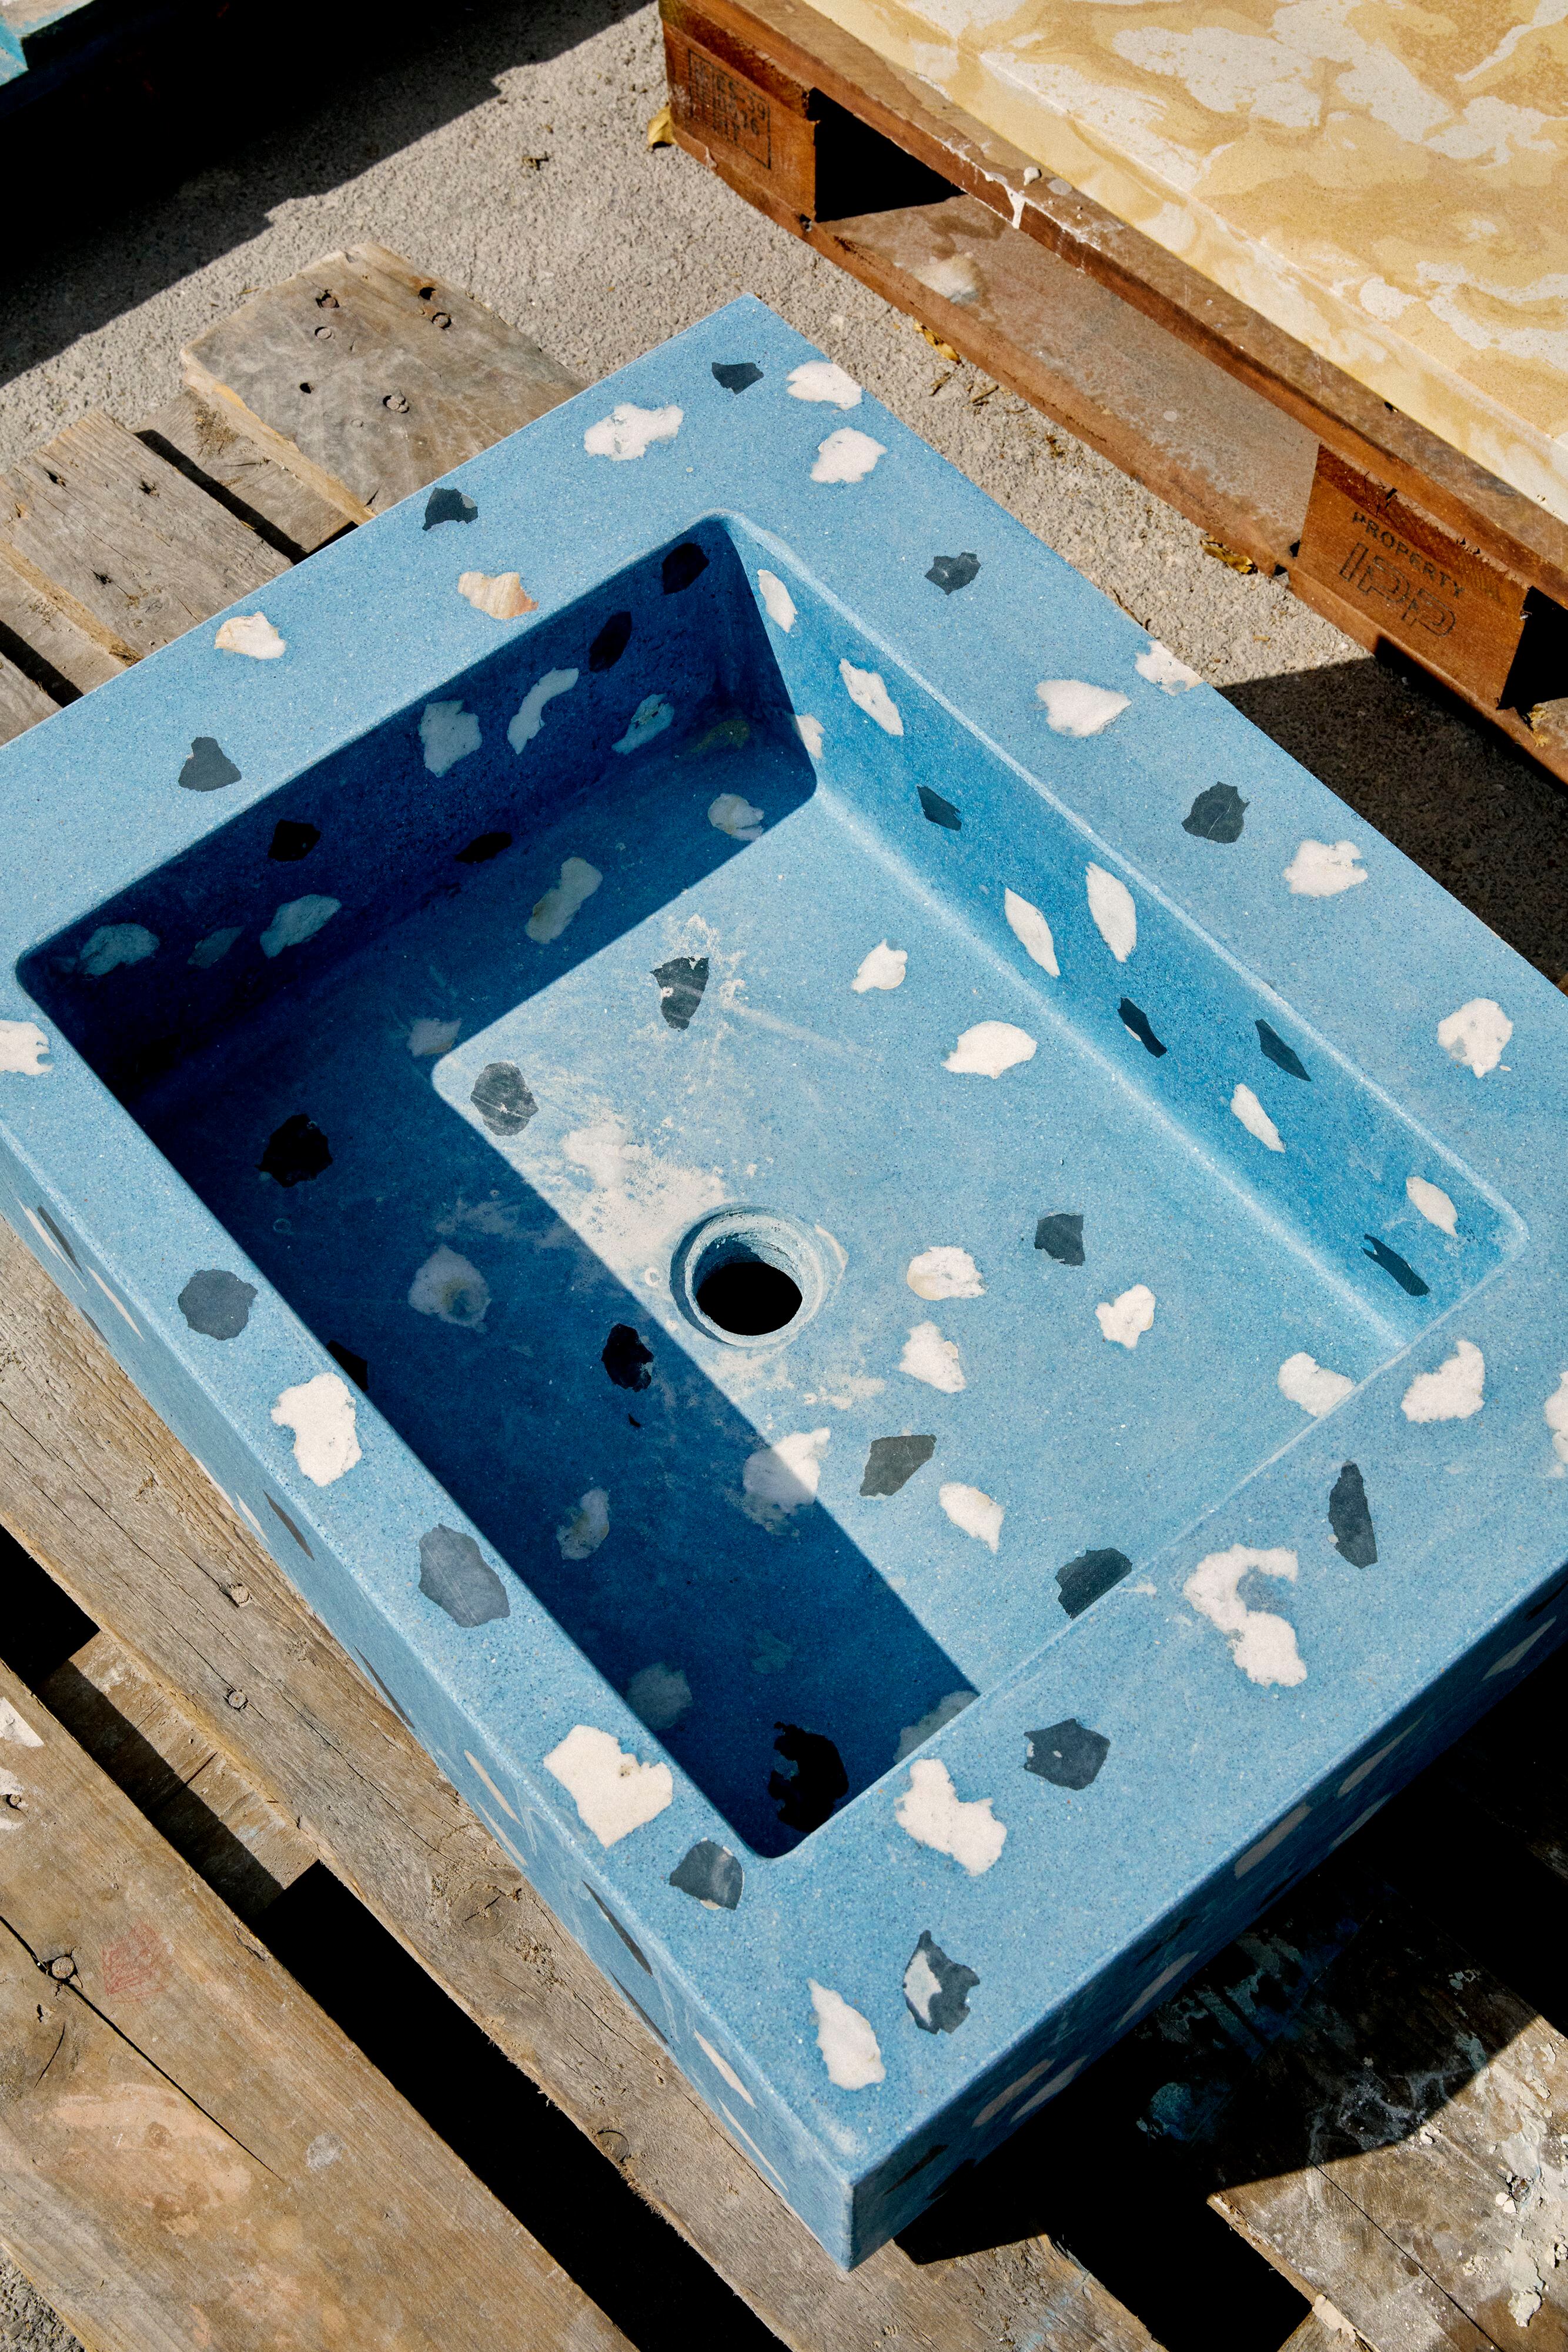 Lavabo de terrazo, cuya elaboración implica ir echando la mezcla pigmentada en azul en un molde mientras los áridos (los fragmentos grandes) se van colocando manualmente capa a capa.